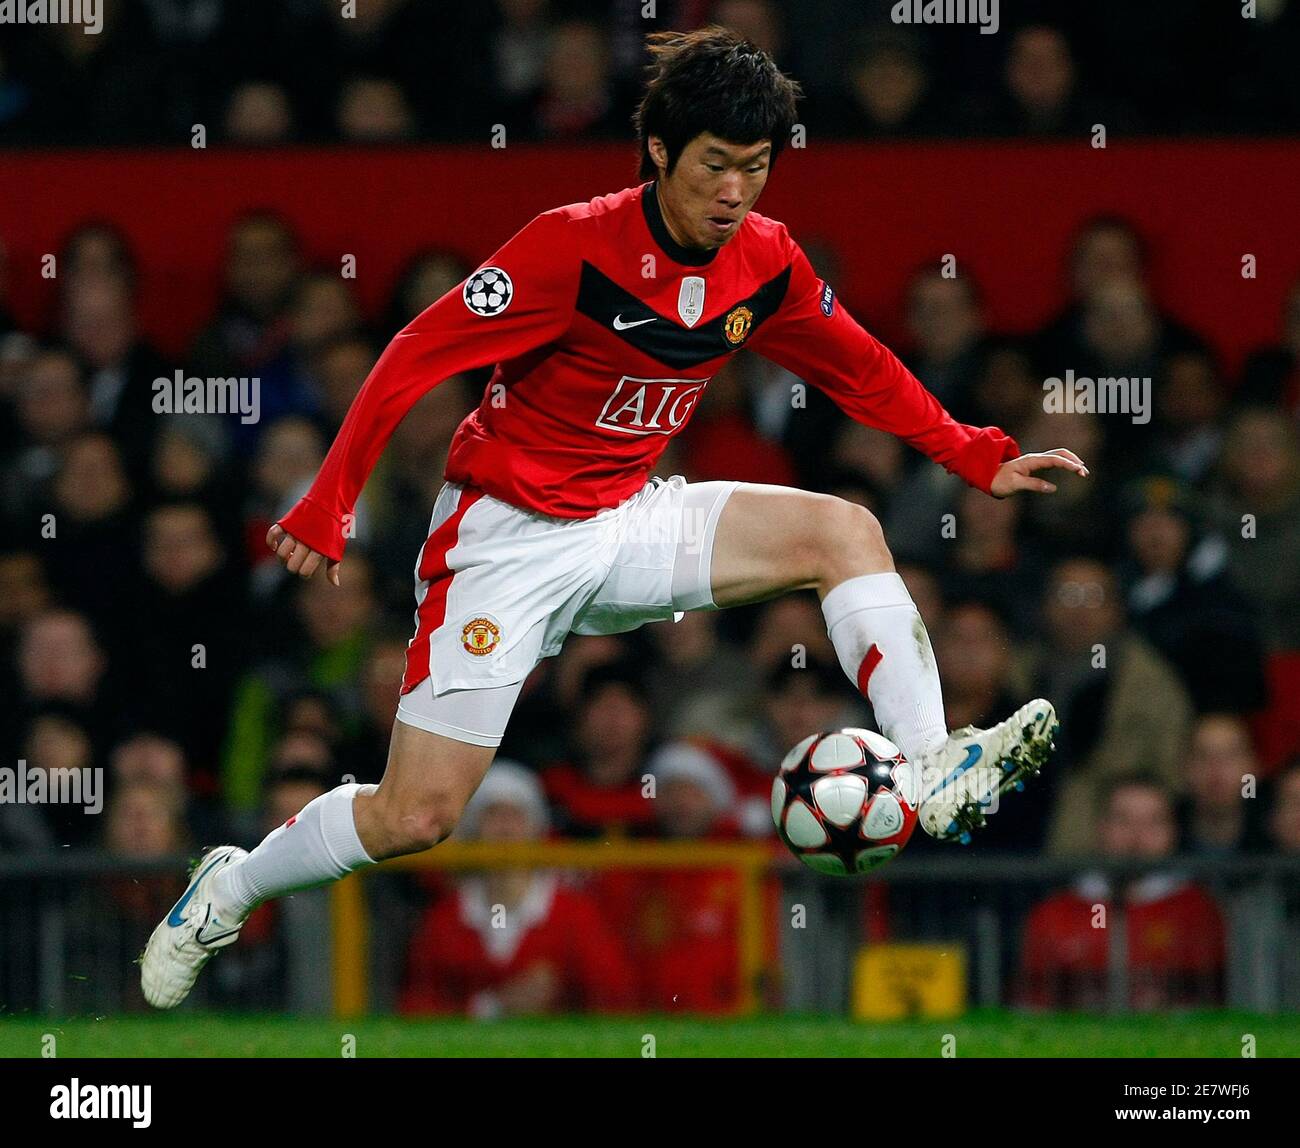 Ти сун. Пак Джи Сун Манчестер Юнайтед. Пак Чжи Сун Манчестер Юнайтед 2008. Park Ji Sung футболист.